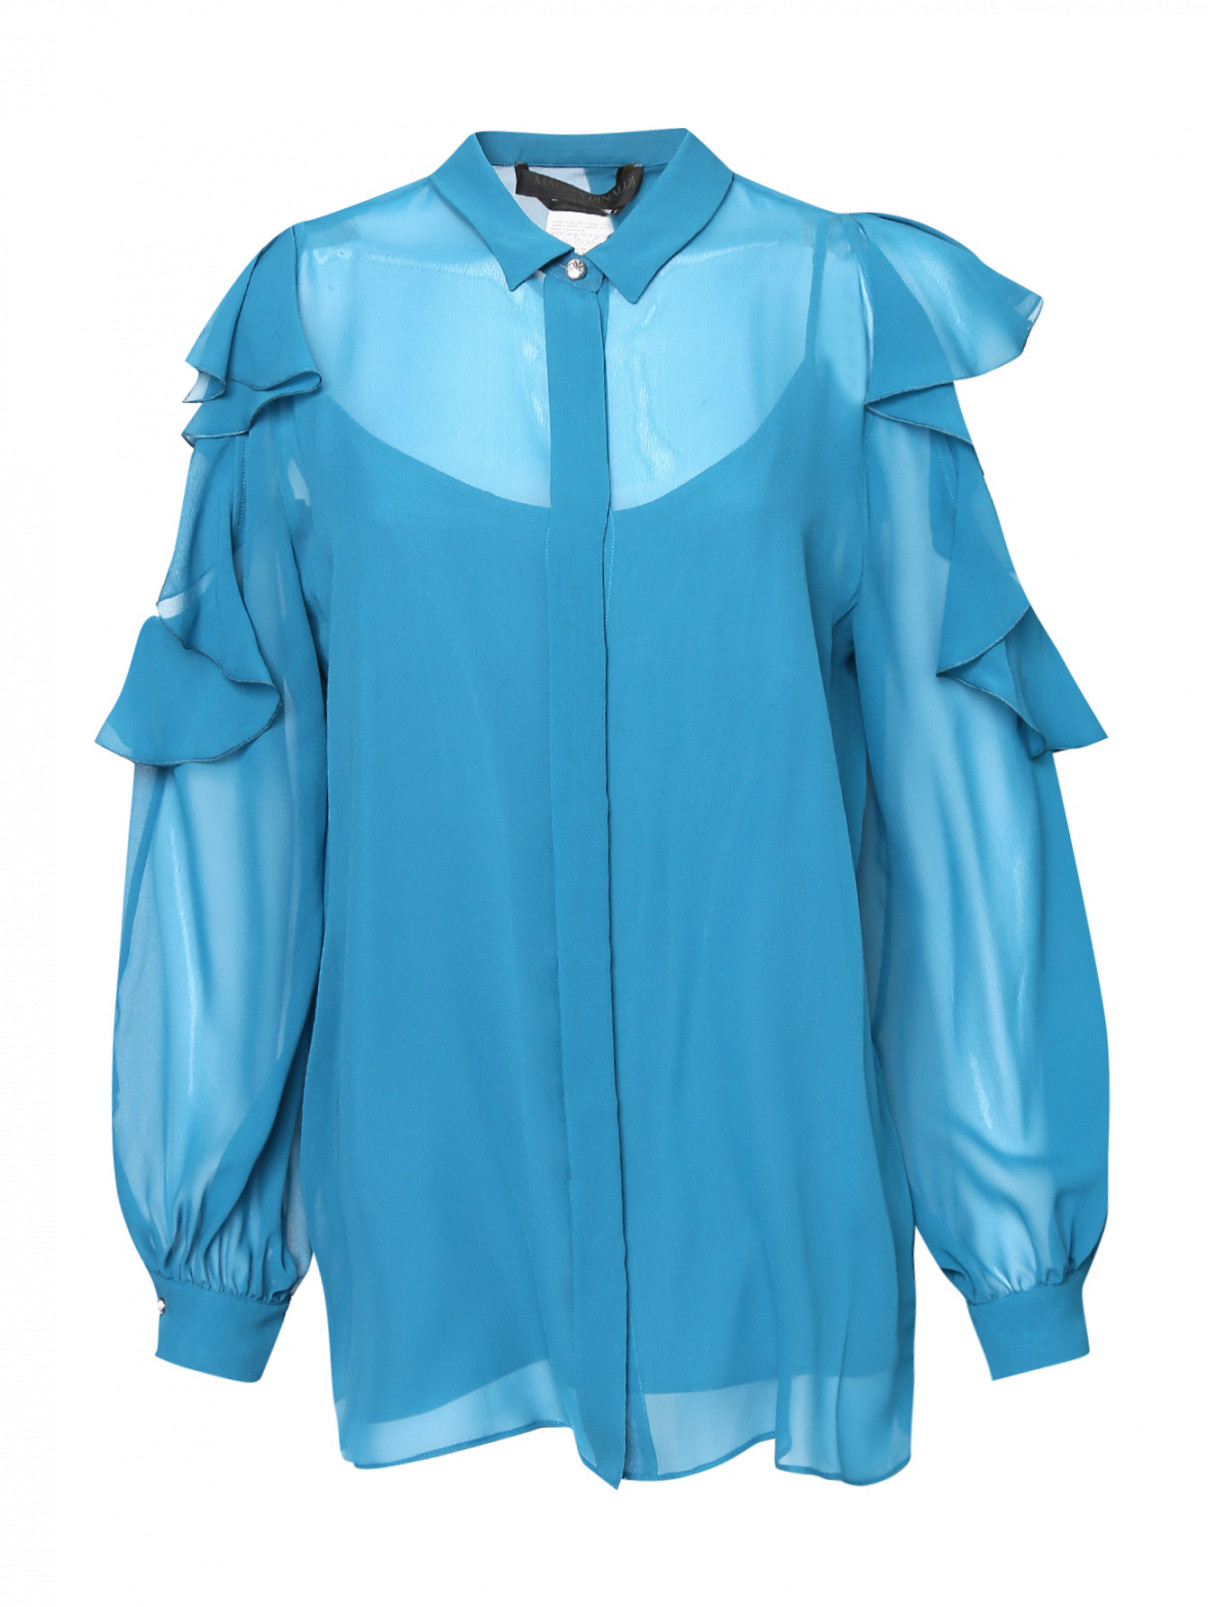 Блуза из полупрозрачного шелка с вырезами и воланами на рукавах Marina Rinaldi  –  Общий вид  – Цвет:  Синий